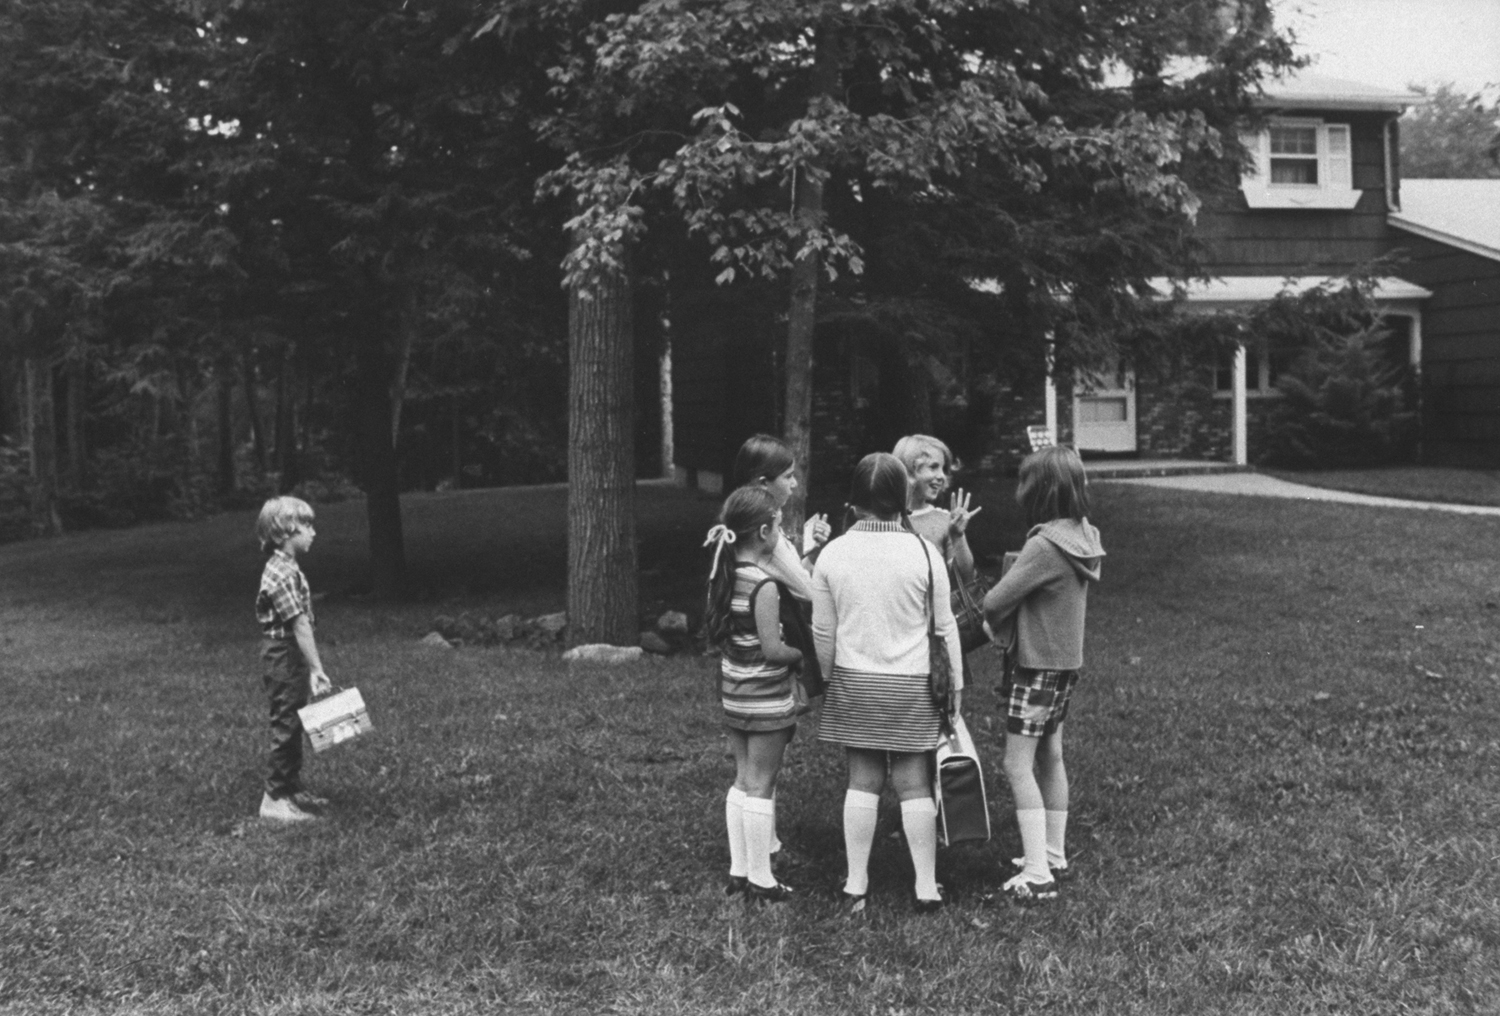 School bus stop, New Jersey, 1971